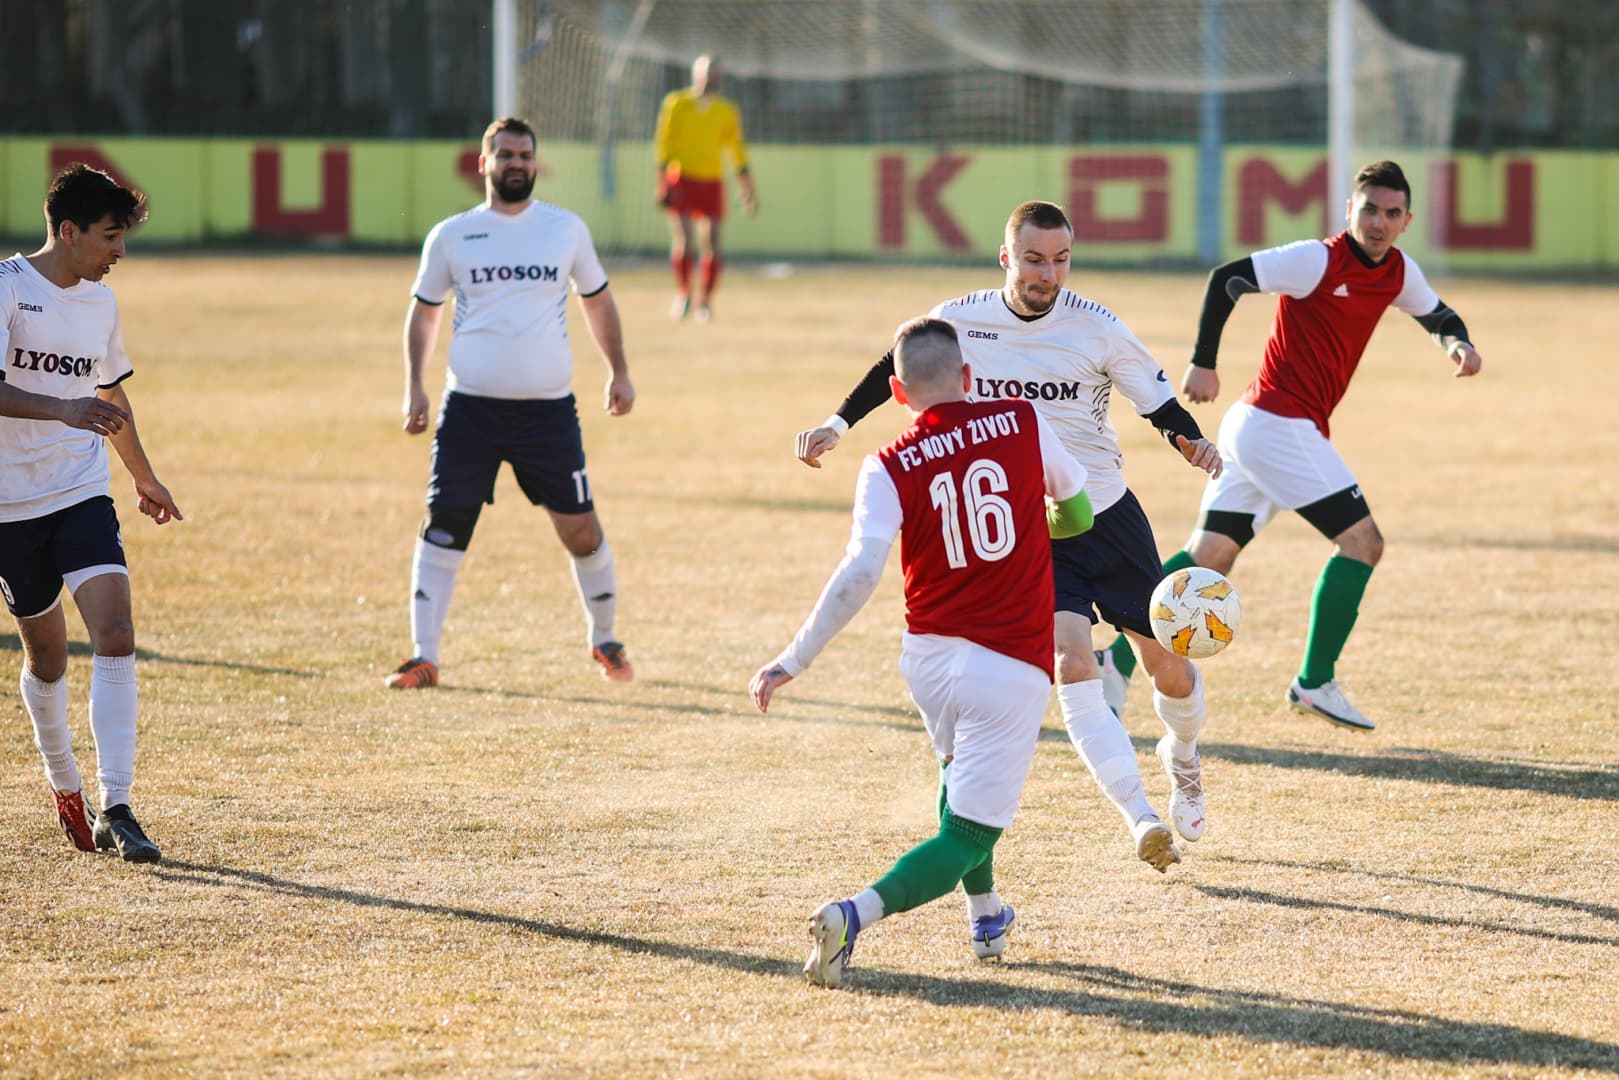 Nyugat-szlovákiai V. liga, Keleti csoport, 20. forduló: Huszáros szentpéteri hajrá